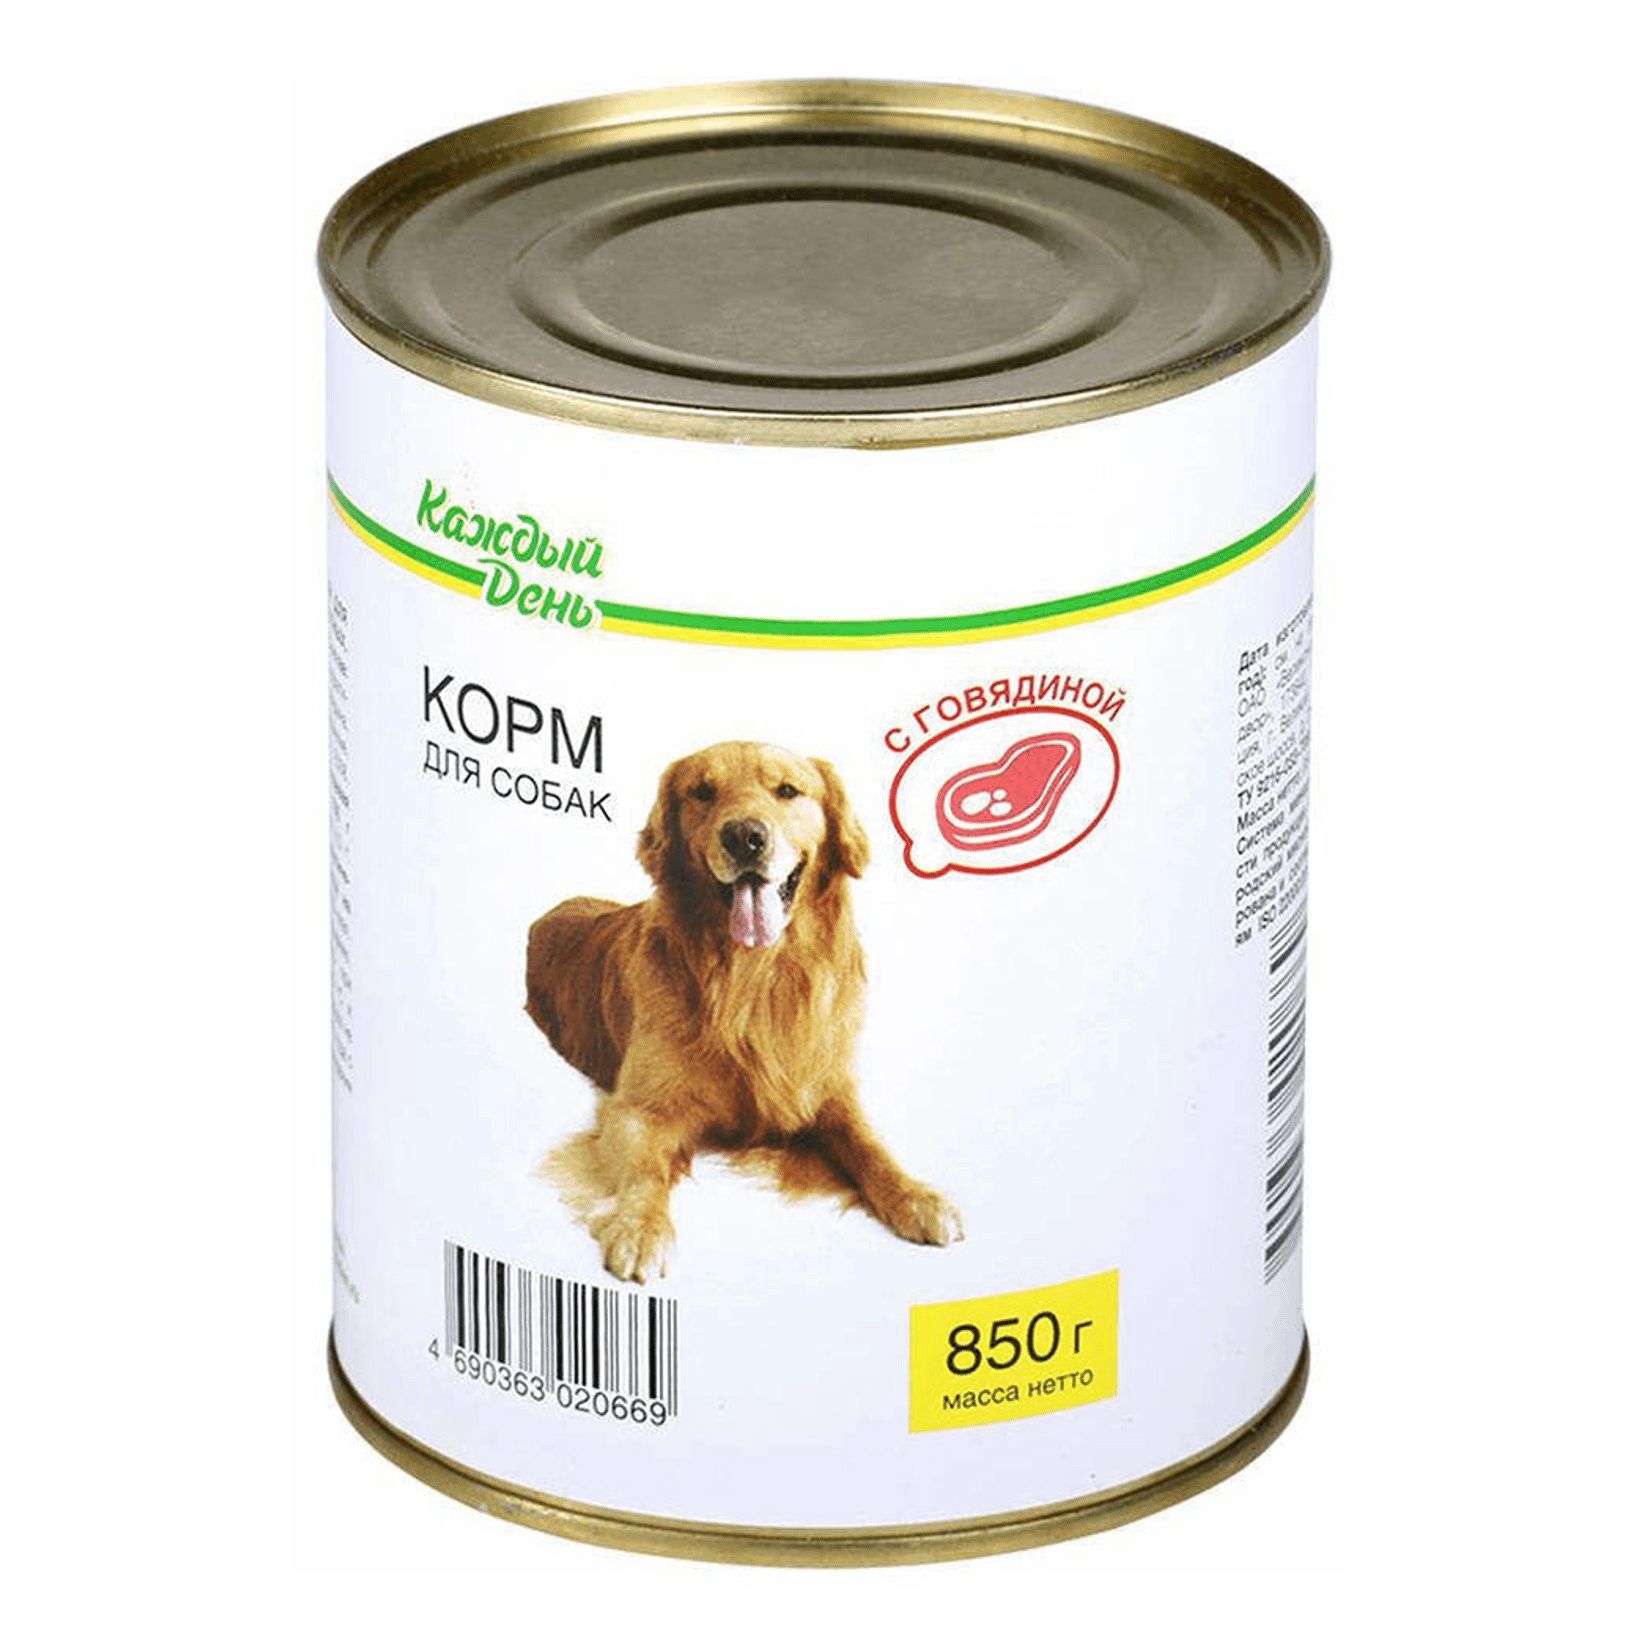 Корма купить казань. Корм для собак каждый день консервы для собак с говядиной (0.85 кг) 1 шт.. Корм для собак darsi (0.85 кг) 1 шт. Консервы для собак: говядина и рис. Корм для собак Rocky (0.25 кг) 1 шт. Паштет с говядиной для щенков. Корм для собак Aras (0.82 кг) 1 шт. Premium select для собак - говядина с овощами и рисом.